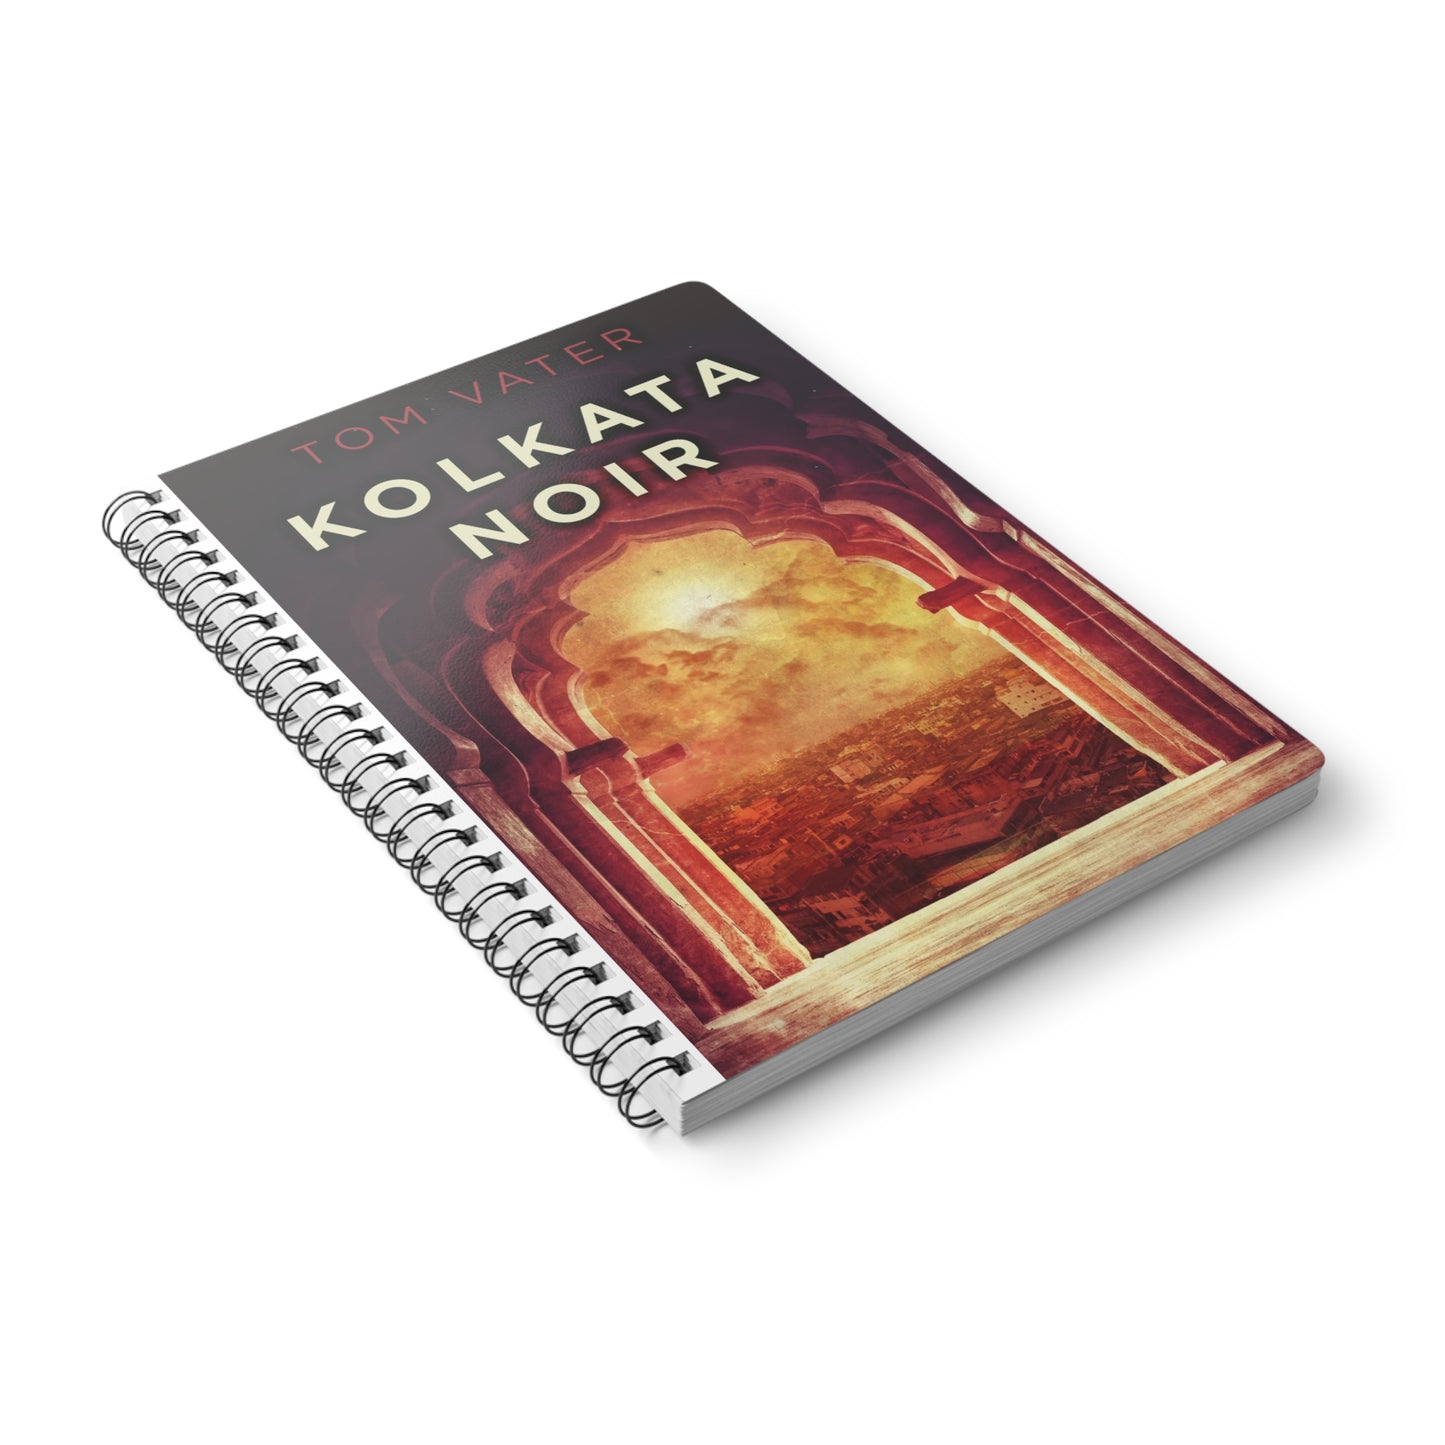 Kolkata Noir - A5 Wirebound Notebook